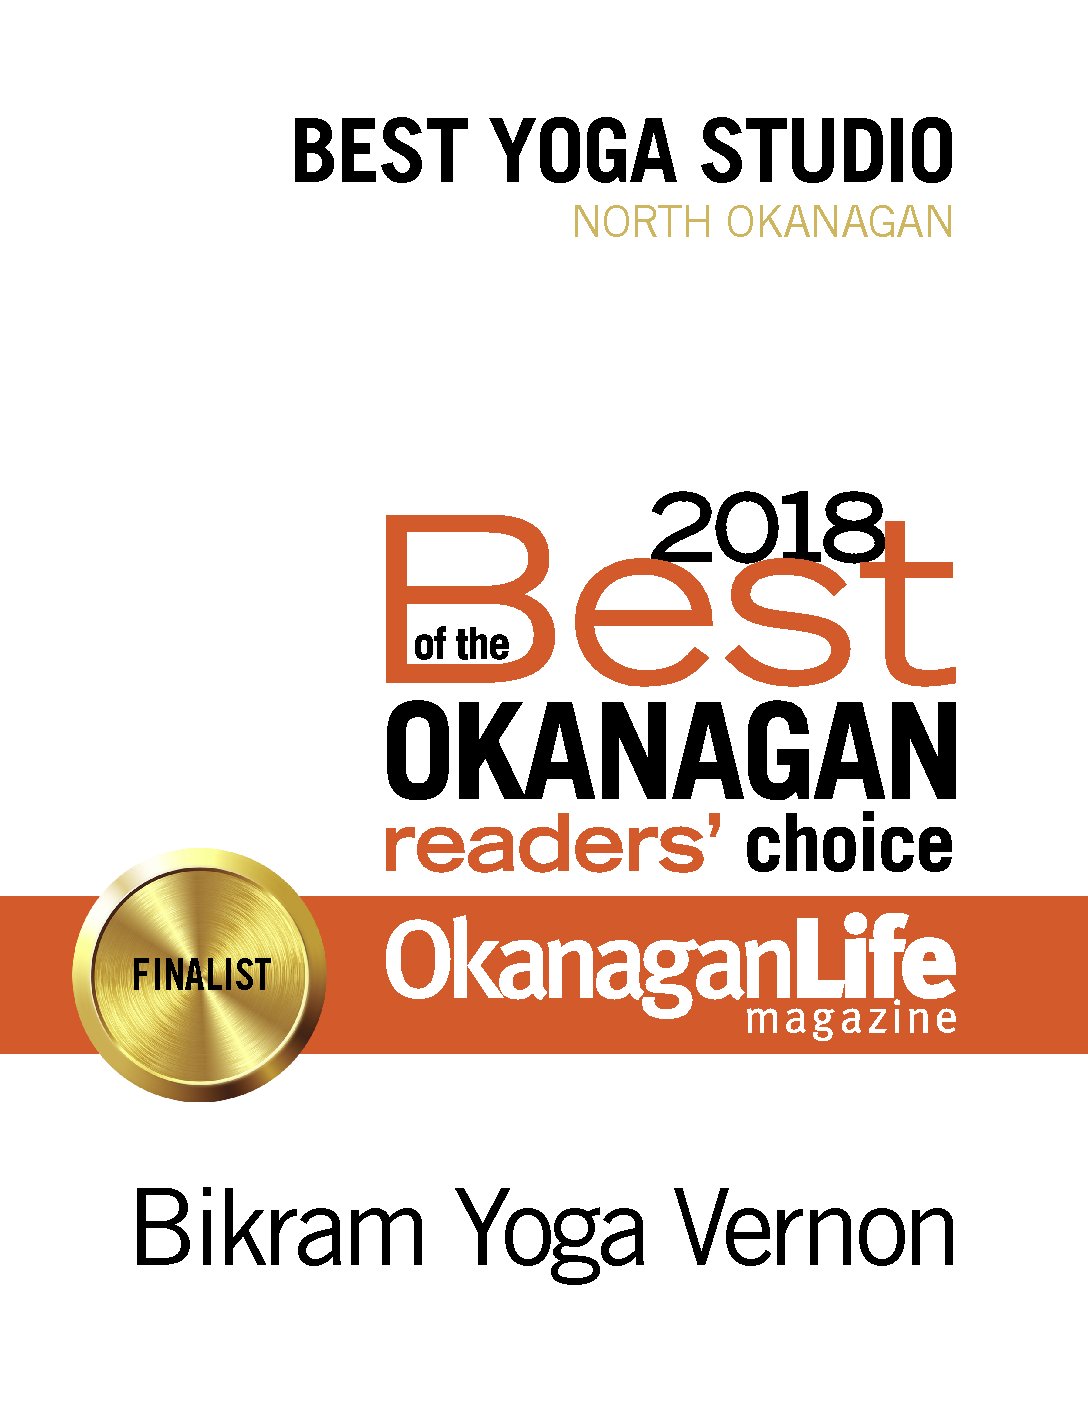 Bikram Yoga Vernon